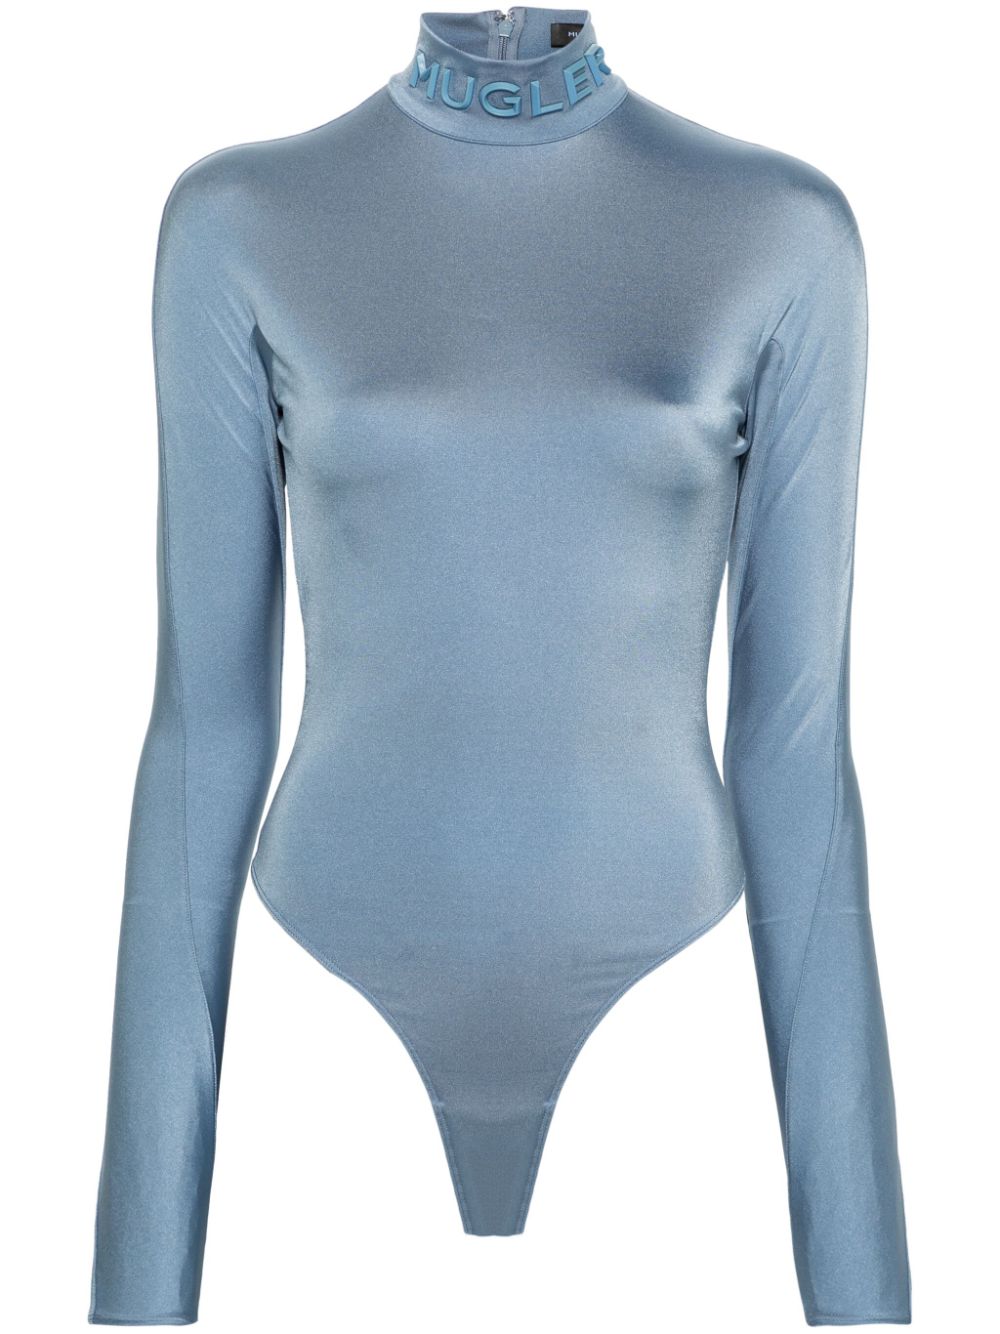 logo-appliqué bodysuit